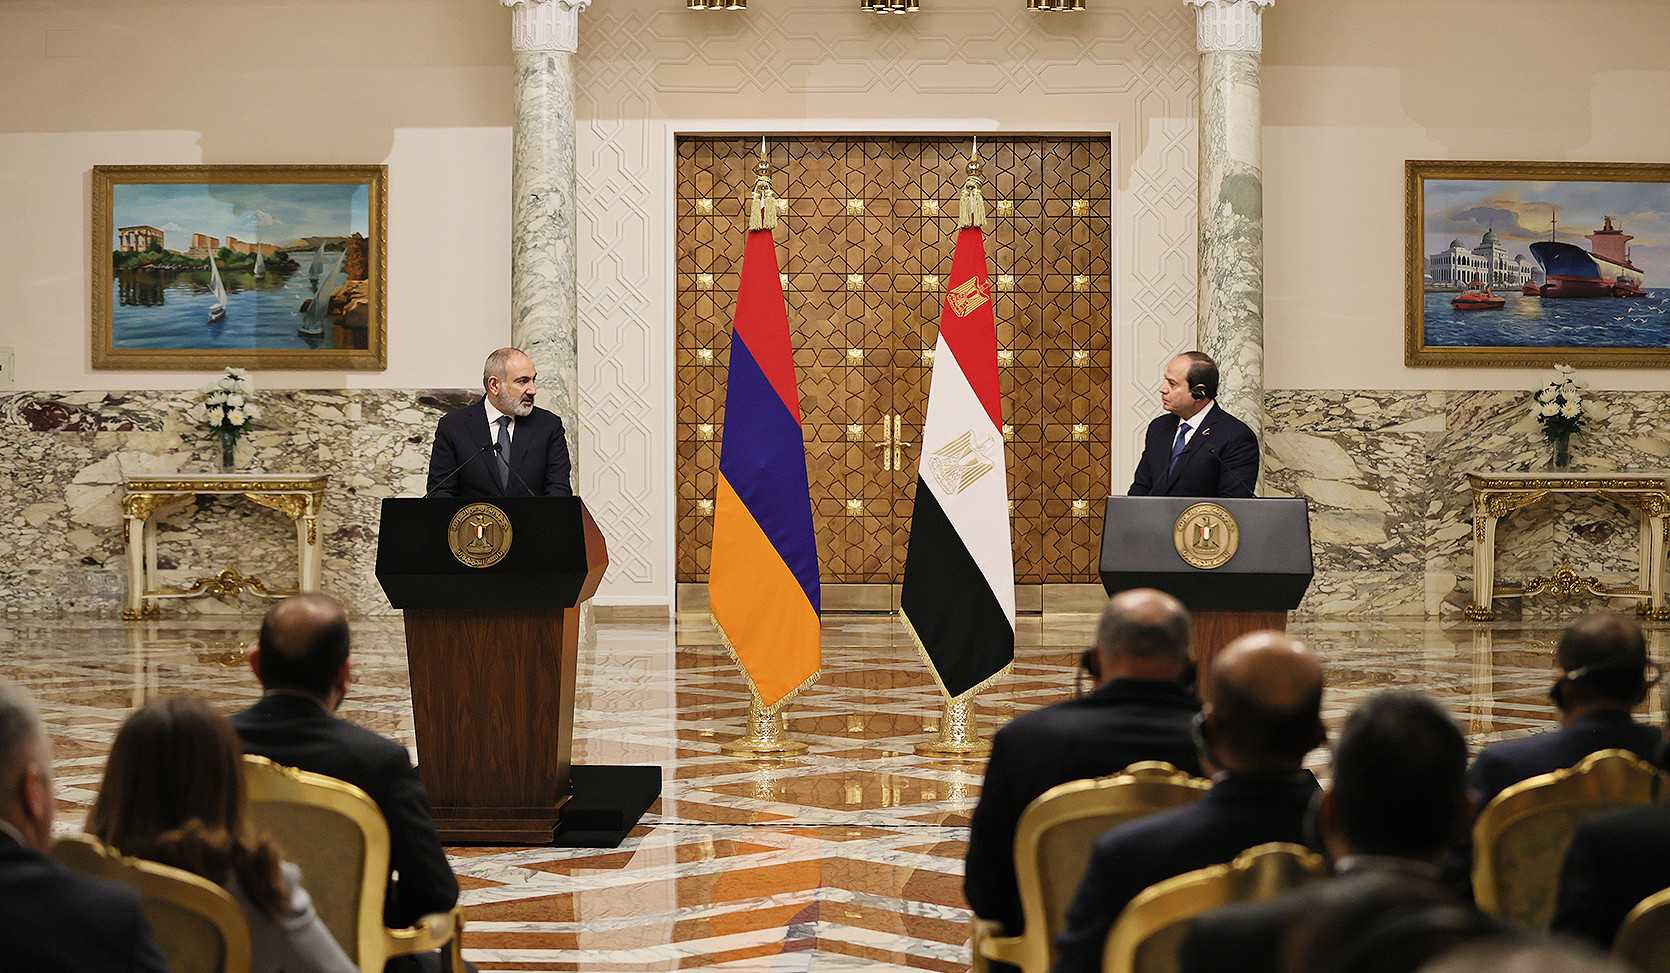 Այսօր մեր բանակցությունները հաստատել են երկու երկրների սպասումները. Եգիպտոսի նախագահը՝ Փաշինյանին